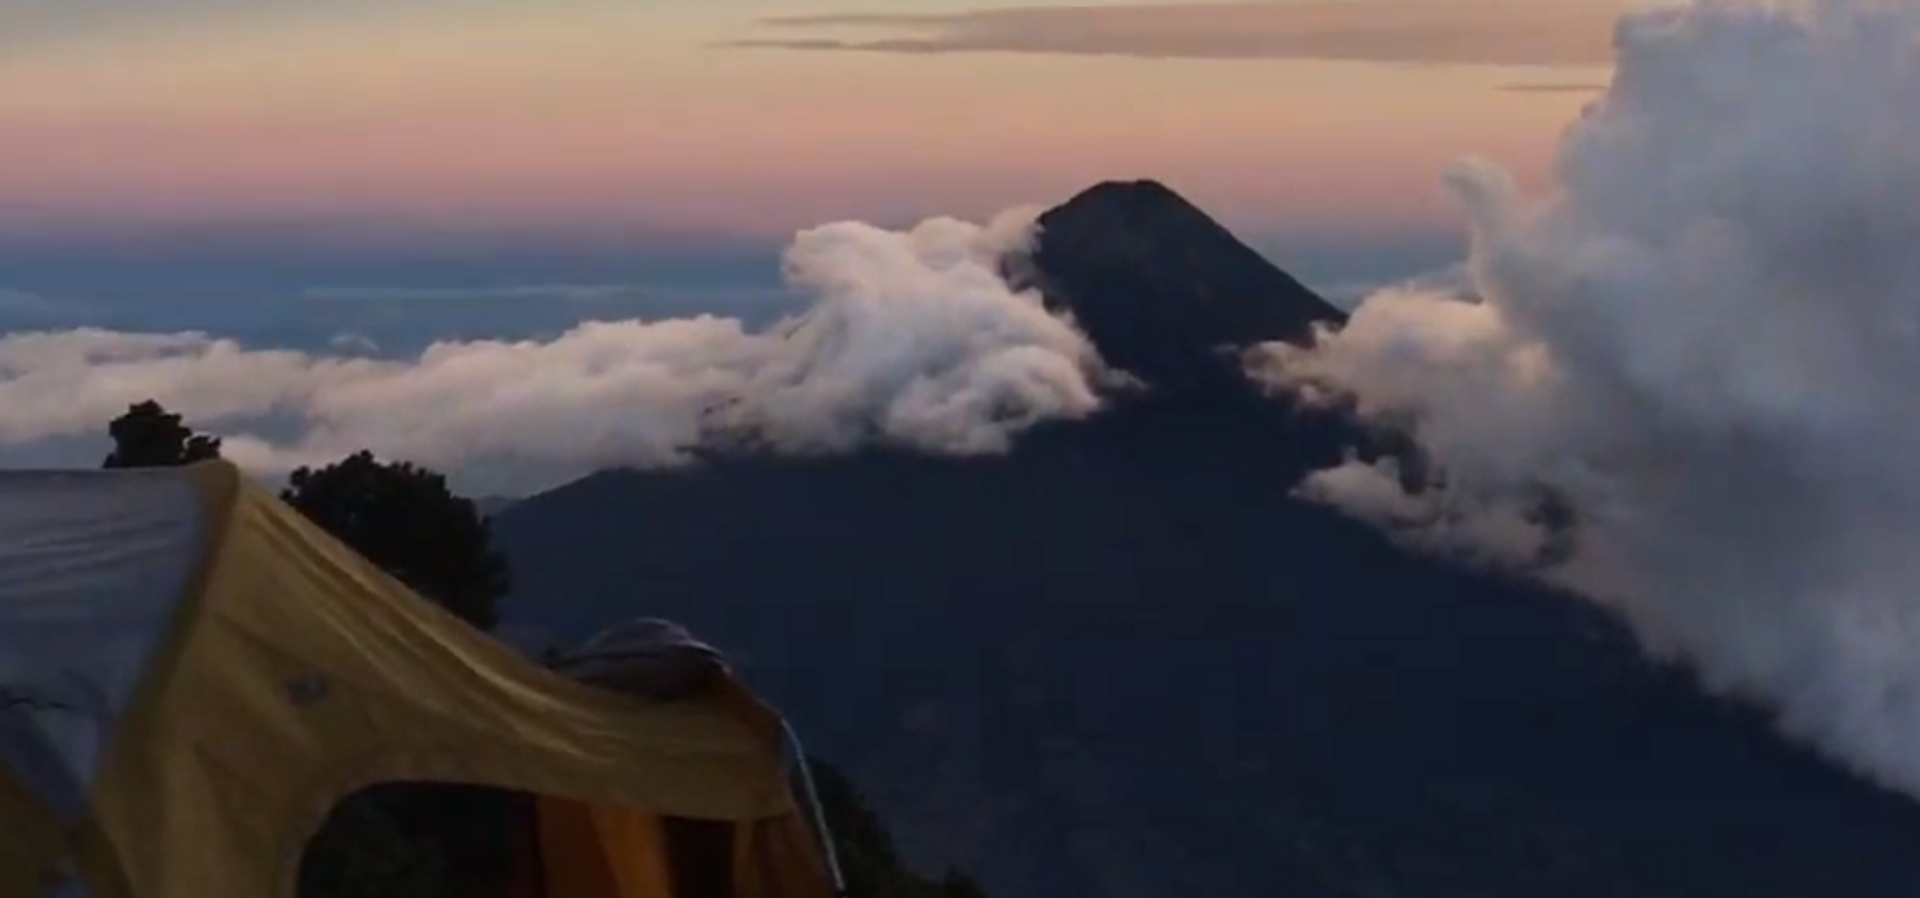 Извержение вулкана Фуэго в Гватемале сняли на видео - Sputnik Таджикистан, 1920, 27.02.2021